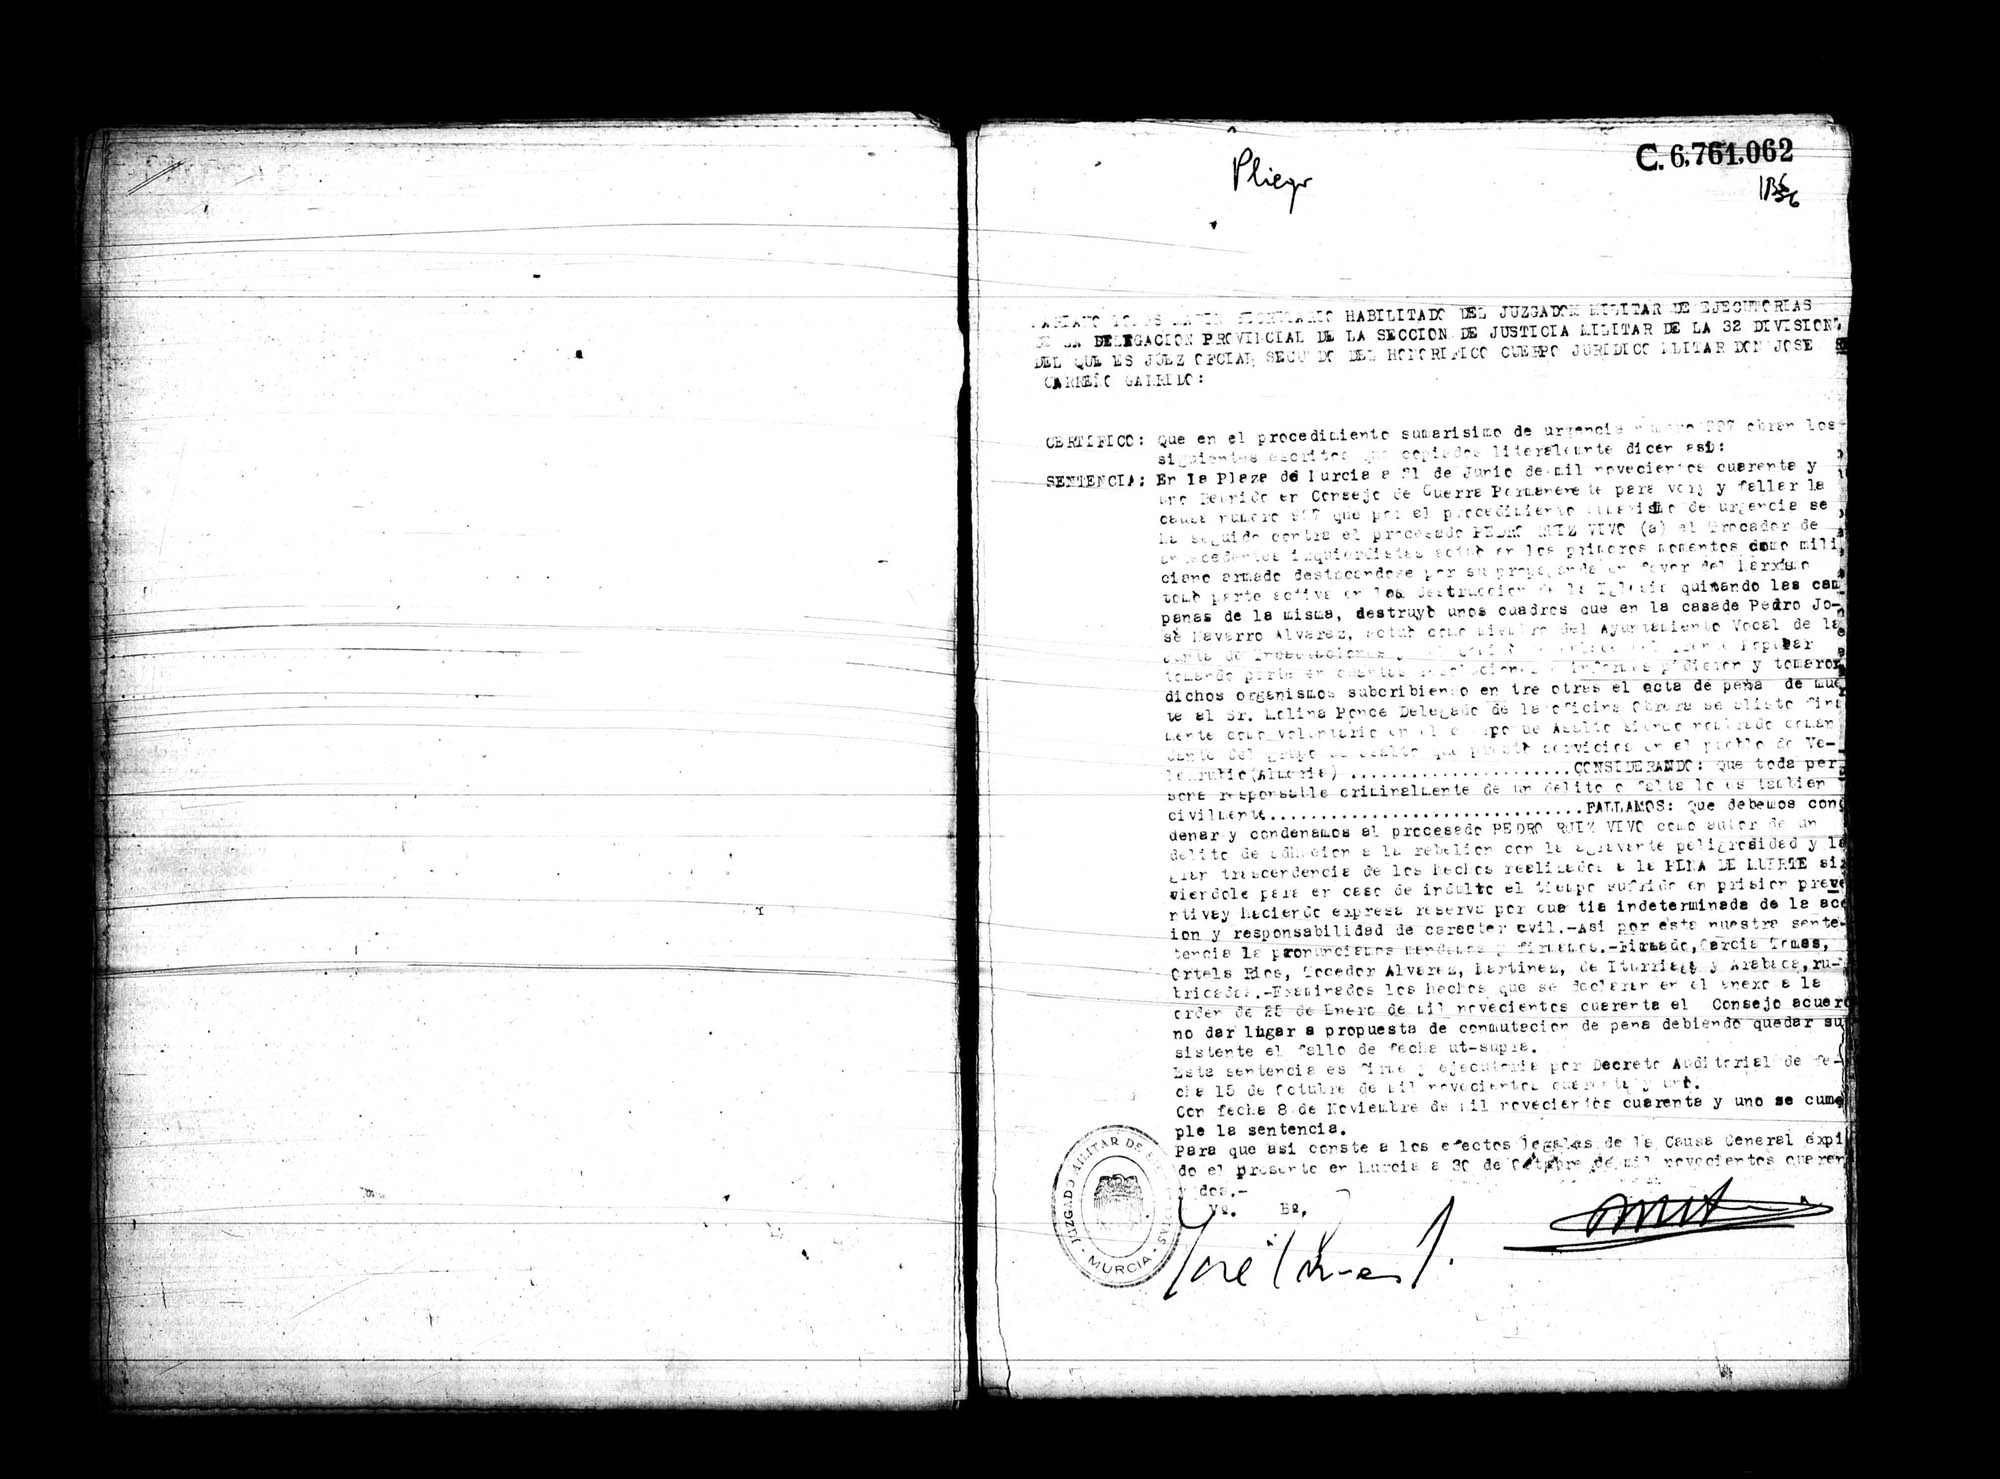 Certificado de la sentencia pronunciada contra Pedro Ruiz Vivo, causa 997, el 21 de junio de 1941 en Murcia.